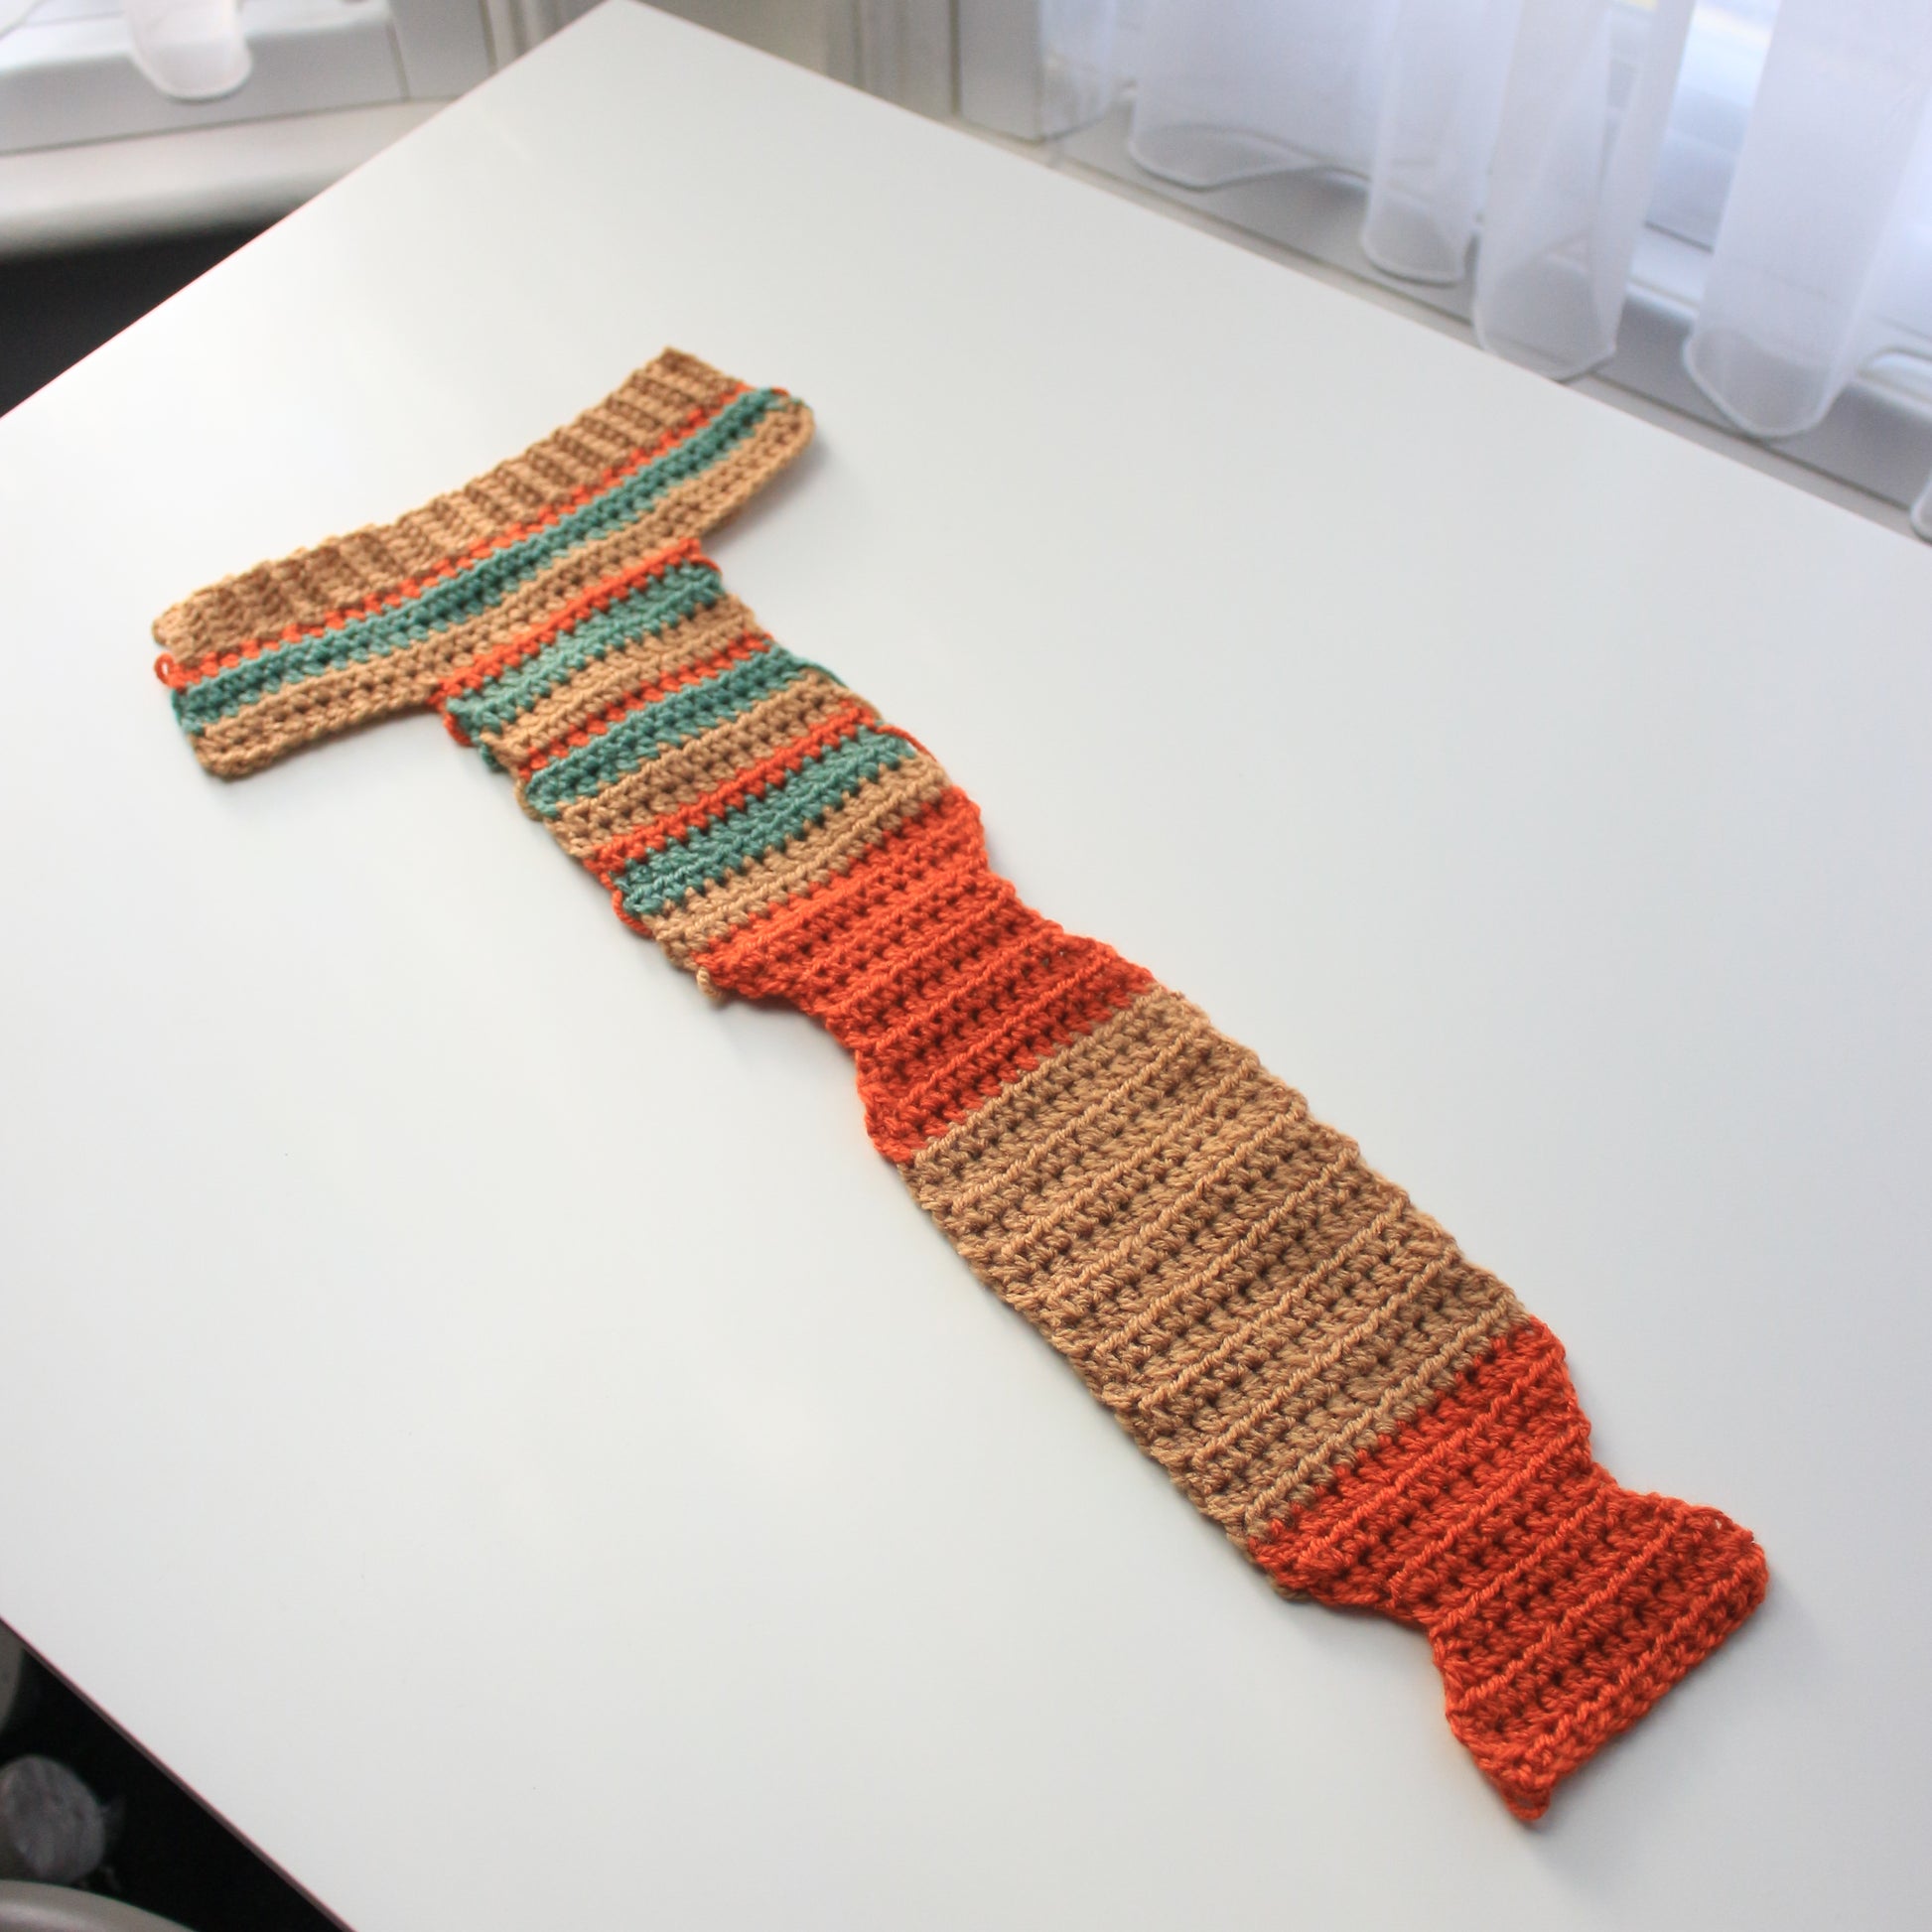 Crochet Socks Written Pattern, The Flat Crochet Socks Pattern